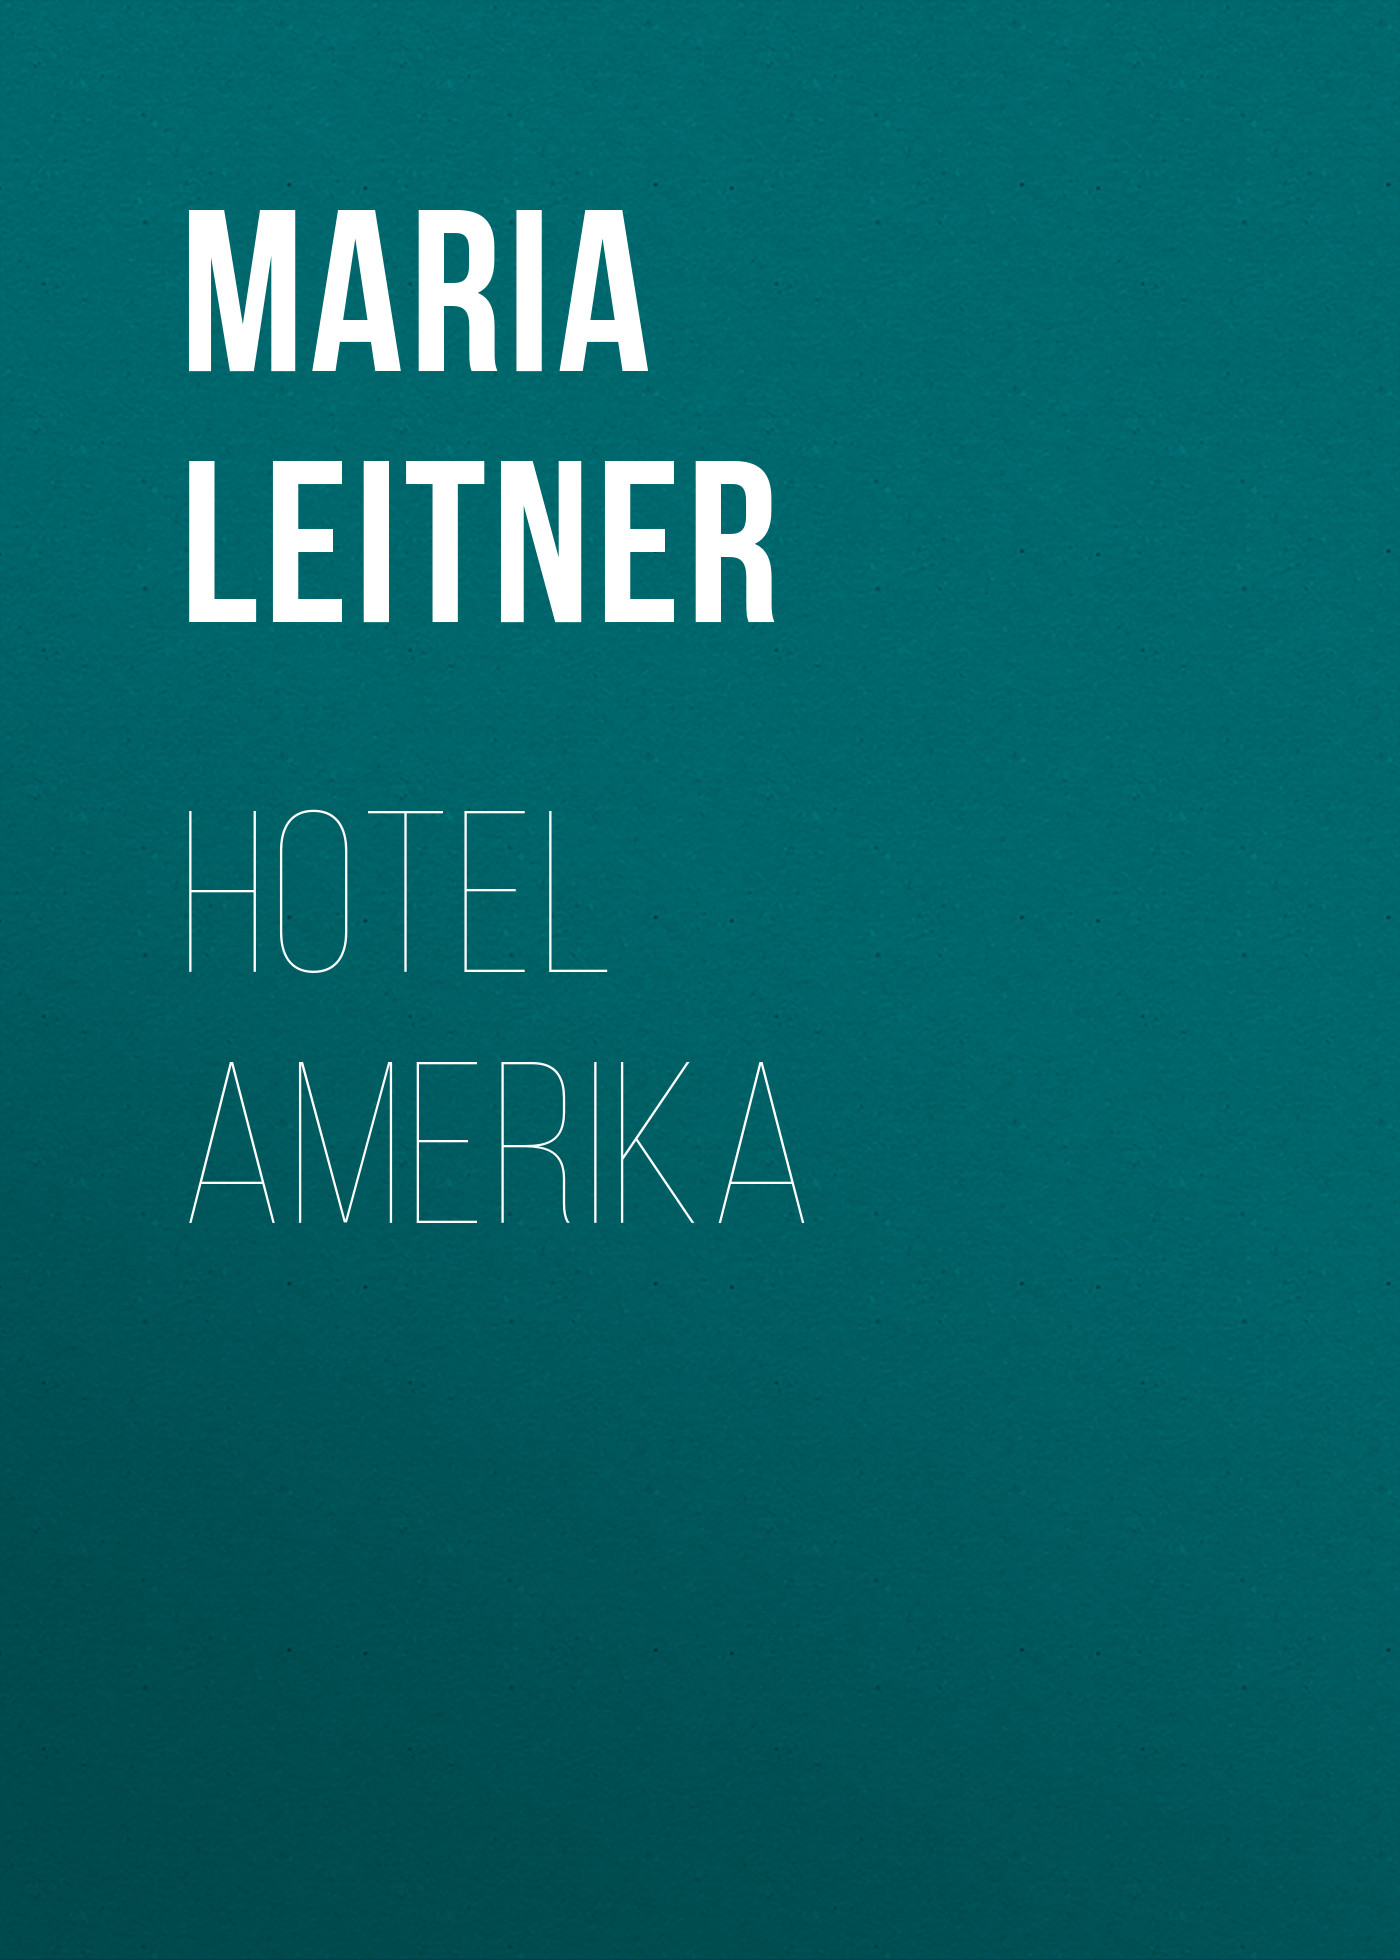 Книга Hotel Amerika из серии , созданная Maria Leitner, может относится к жанру Зарубежная классика. Стоимость электронной книги Hotel Amerika с идентификатором 48634020 составляет 0 руб.